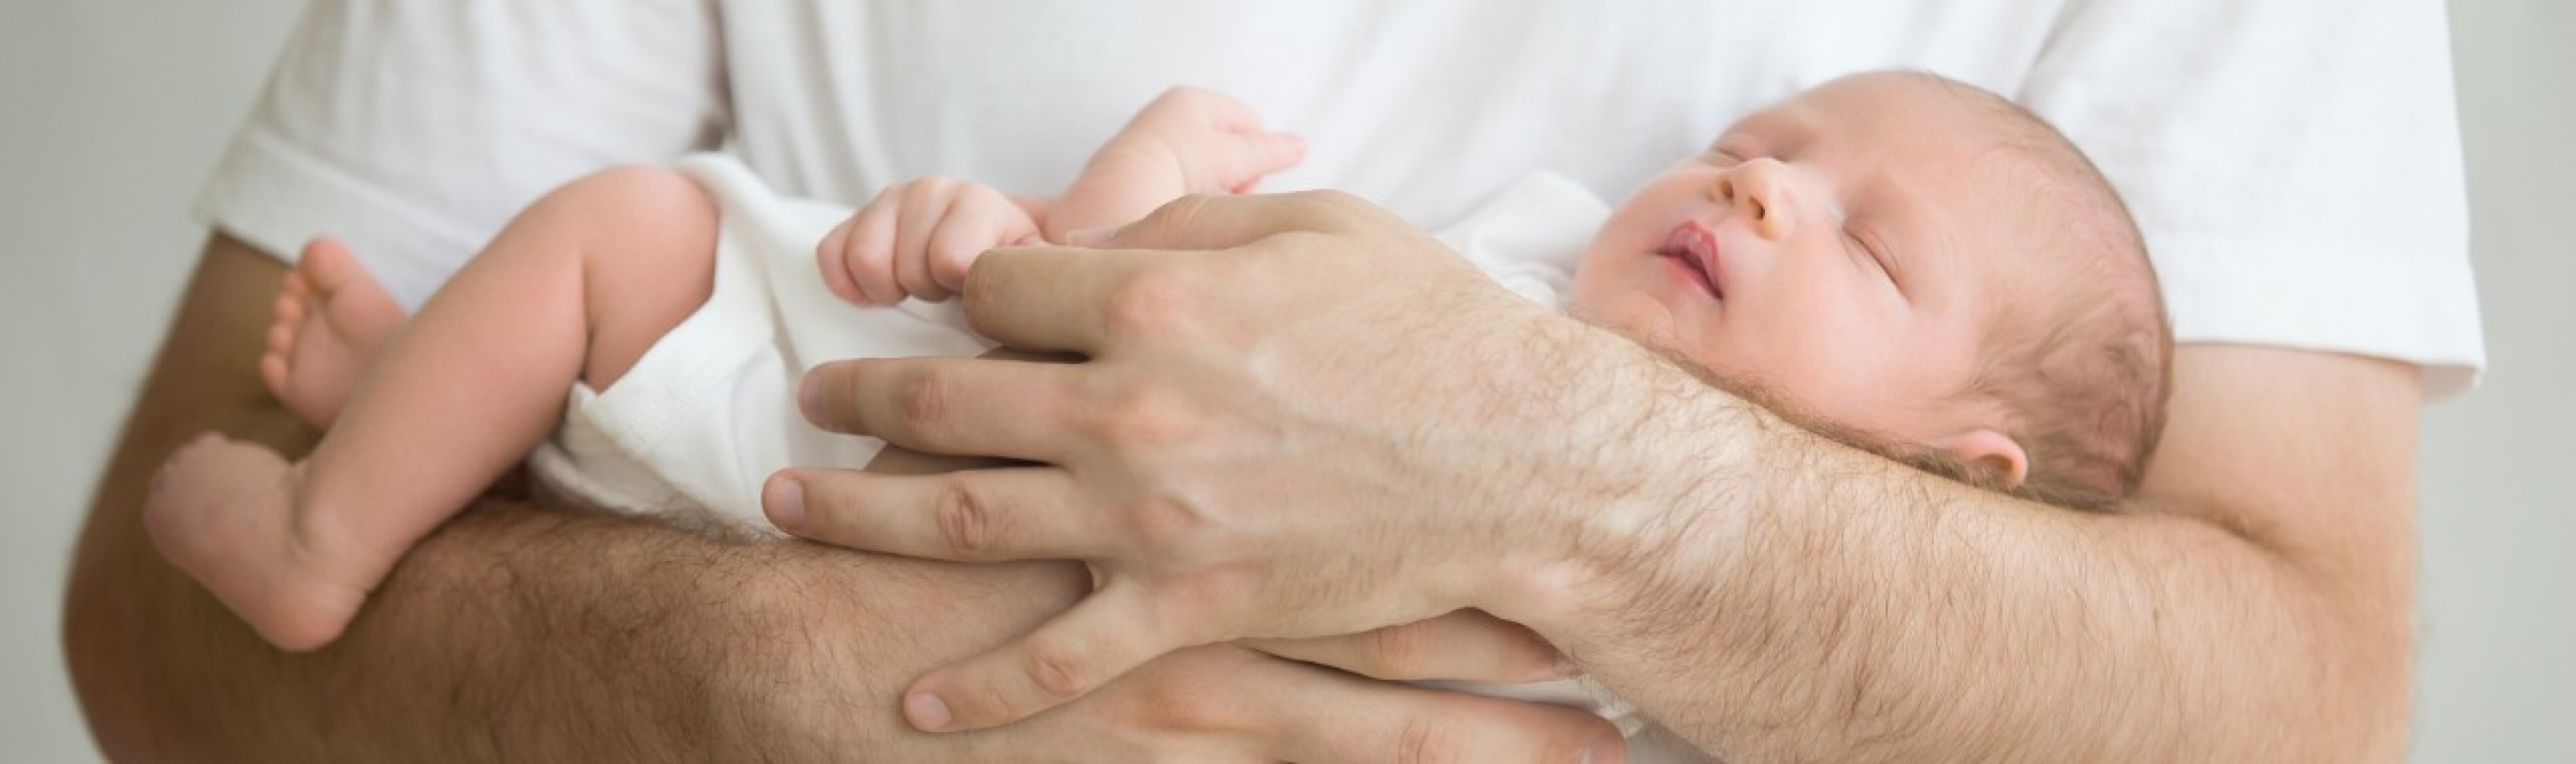 Vaterschaftsurlaub - ein Vater hält sein neugeborenes Kind